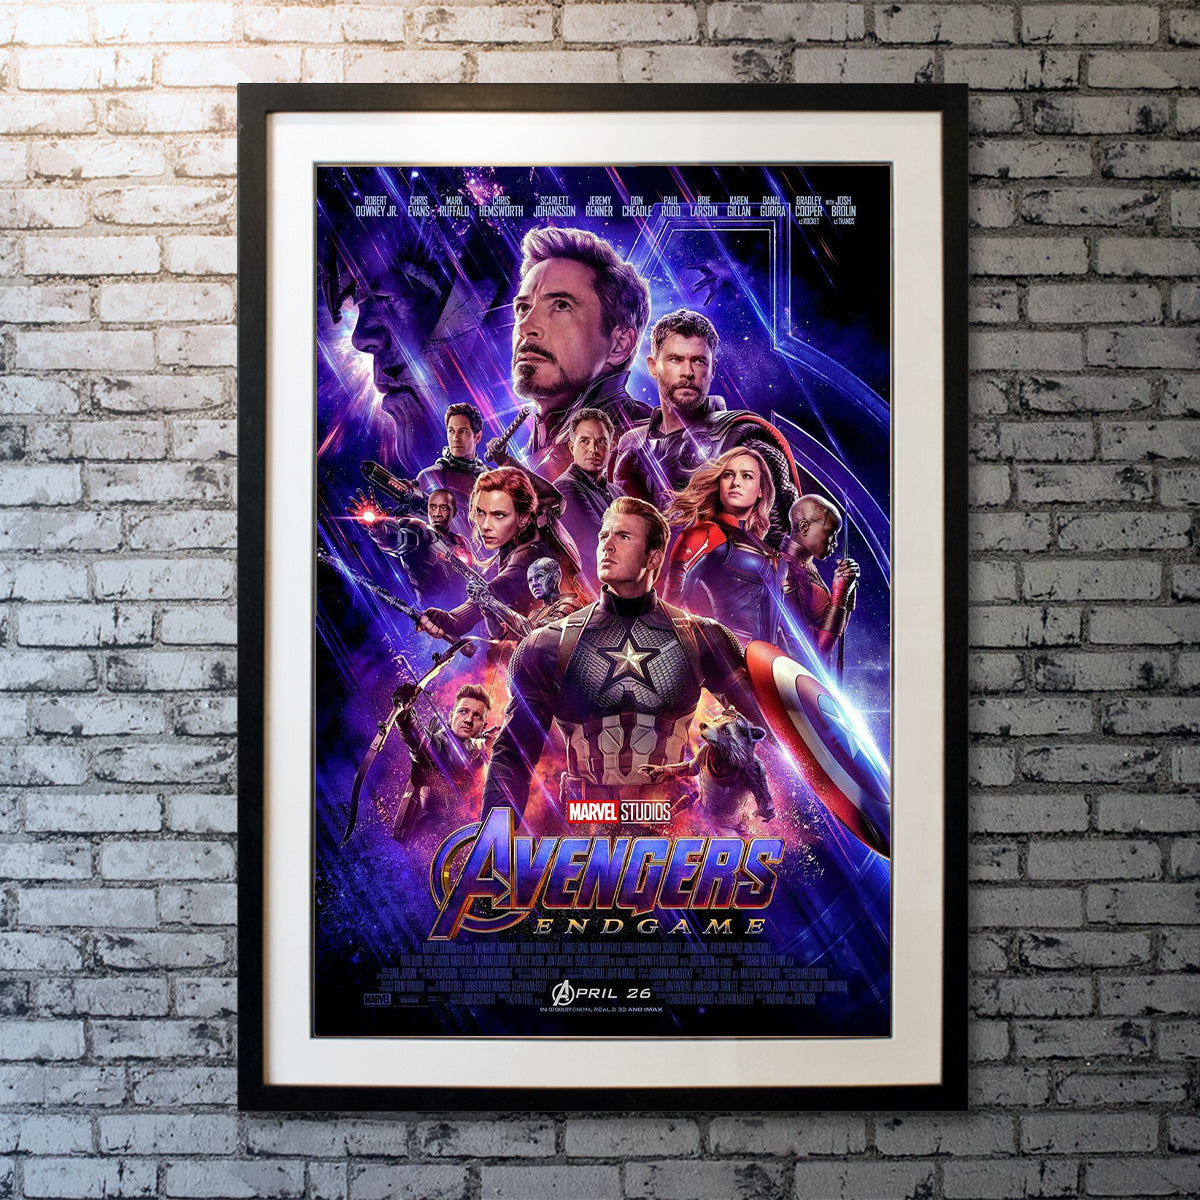 Original Movie Poster of Avengers 4: Endgame (2019)